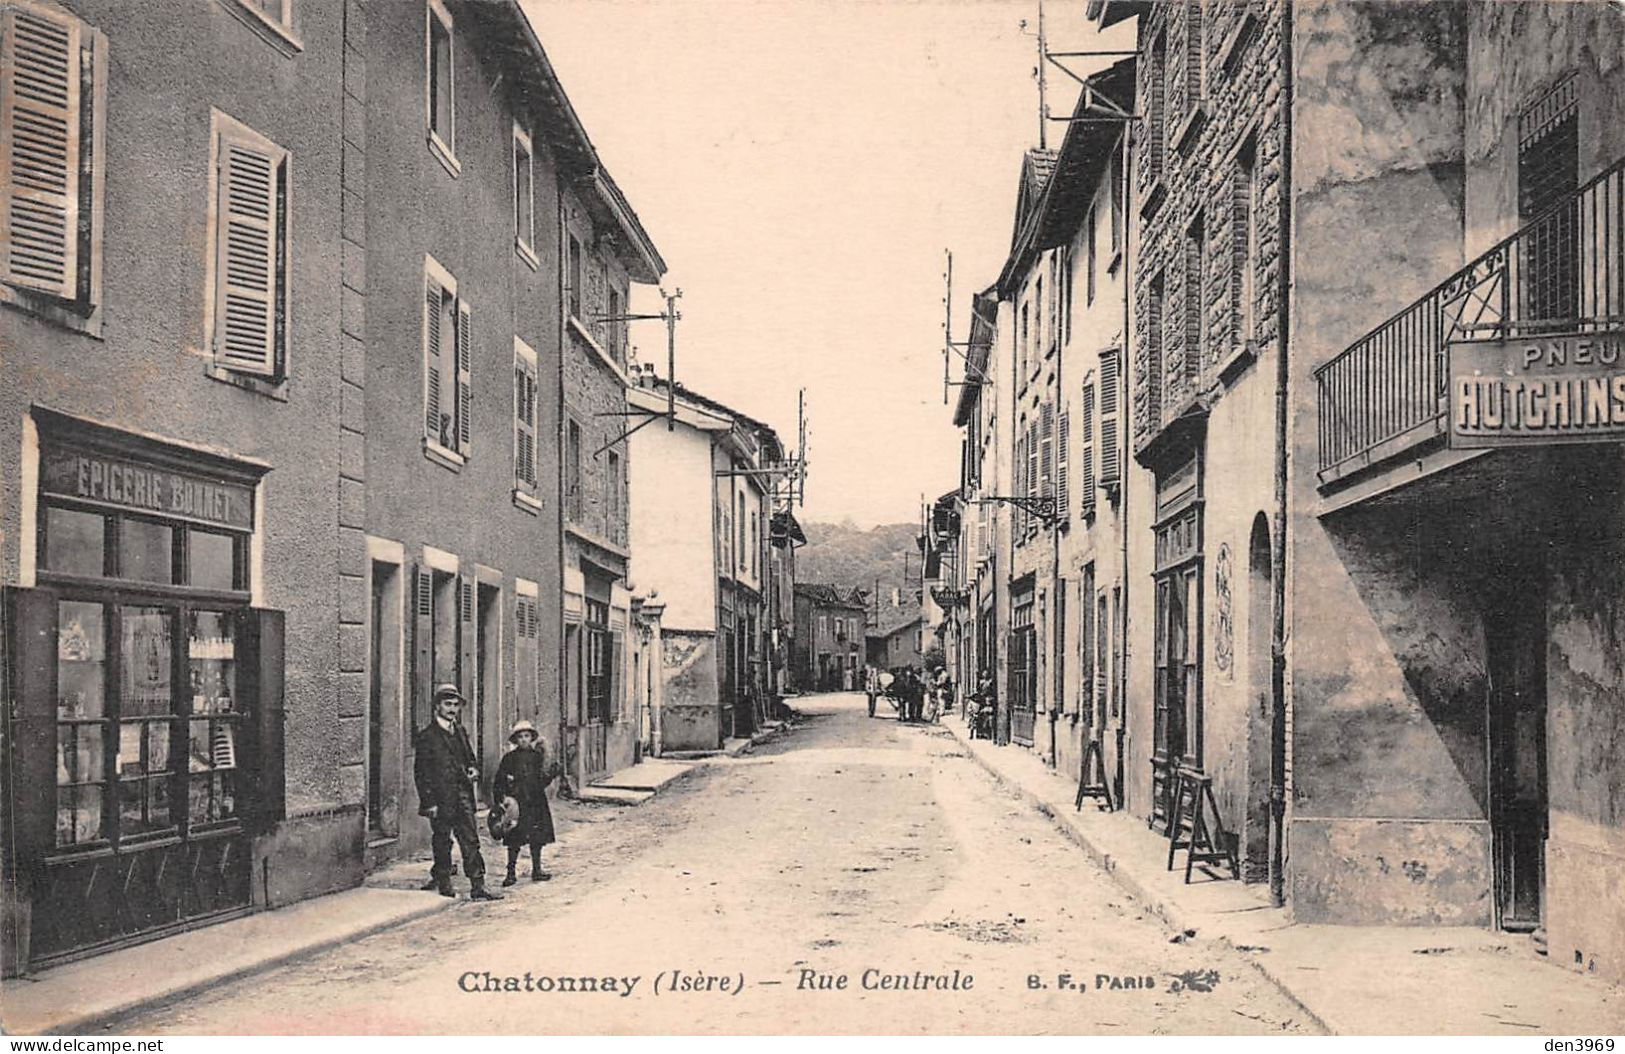 CHATONNAY (Isère) - Rue Centrale - Epicerie Bonnet, Publicité Pneu Hutchinson - Châtonnay